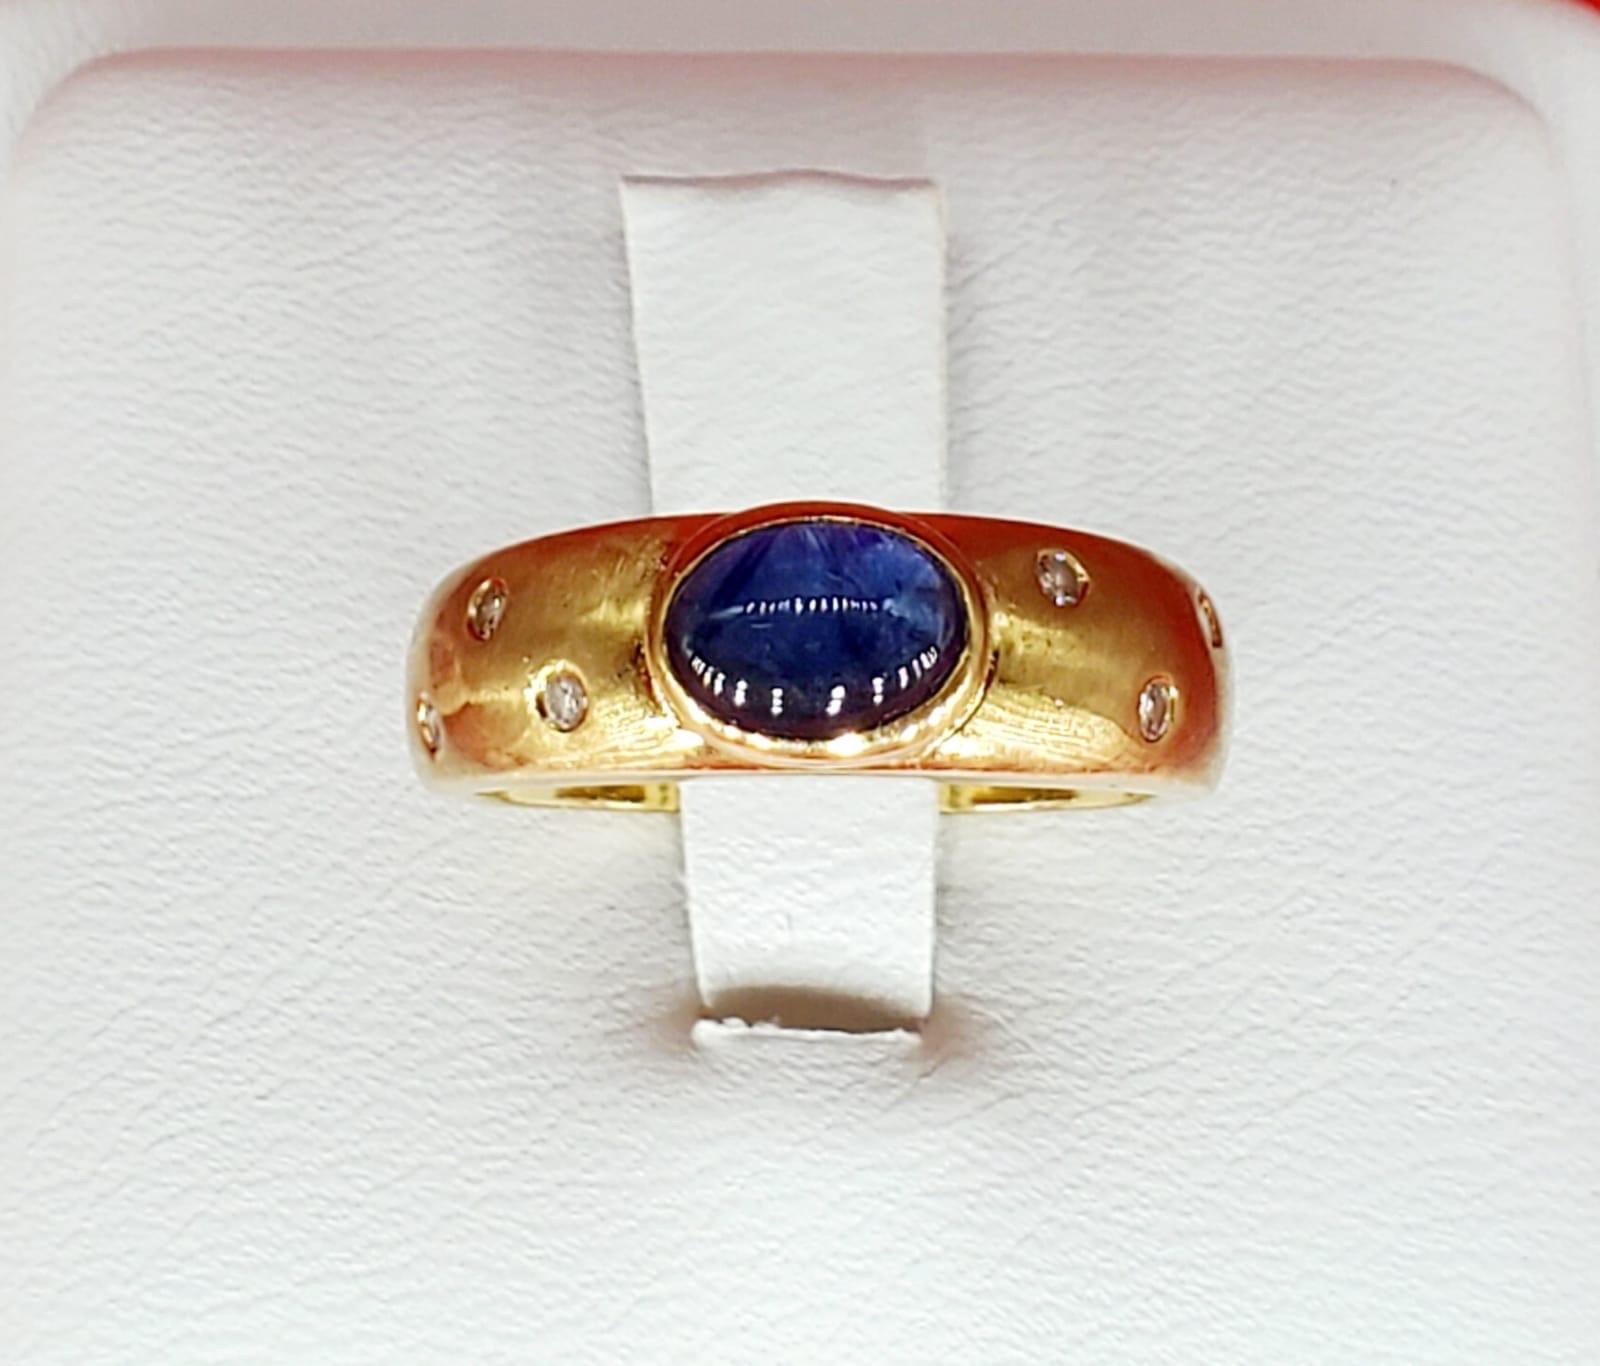 Hervorragender Vintage 1 Karat Saphir Cabochon & Diamanten Etoile Star Galaxy Ring. Der Saphir wiegt ca. 0,90 Karat und die Diamanten, die den Ring umgeben, wiegen insgesamt ca. 0,10 Karat. Der Ring im Etoile-Design (französisch für Sterne) bringt